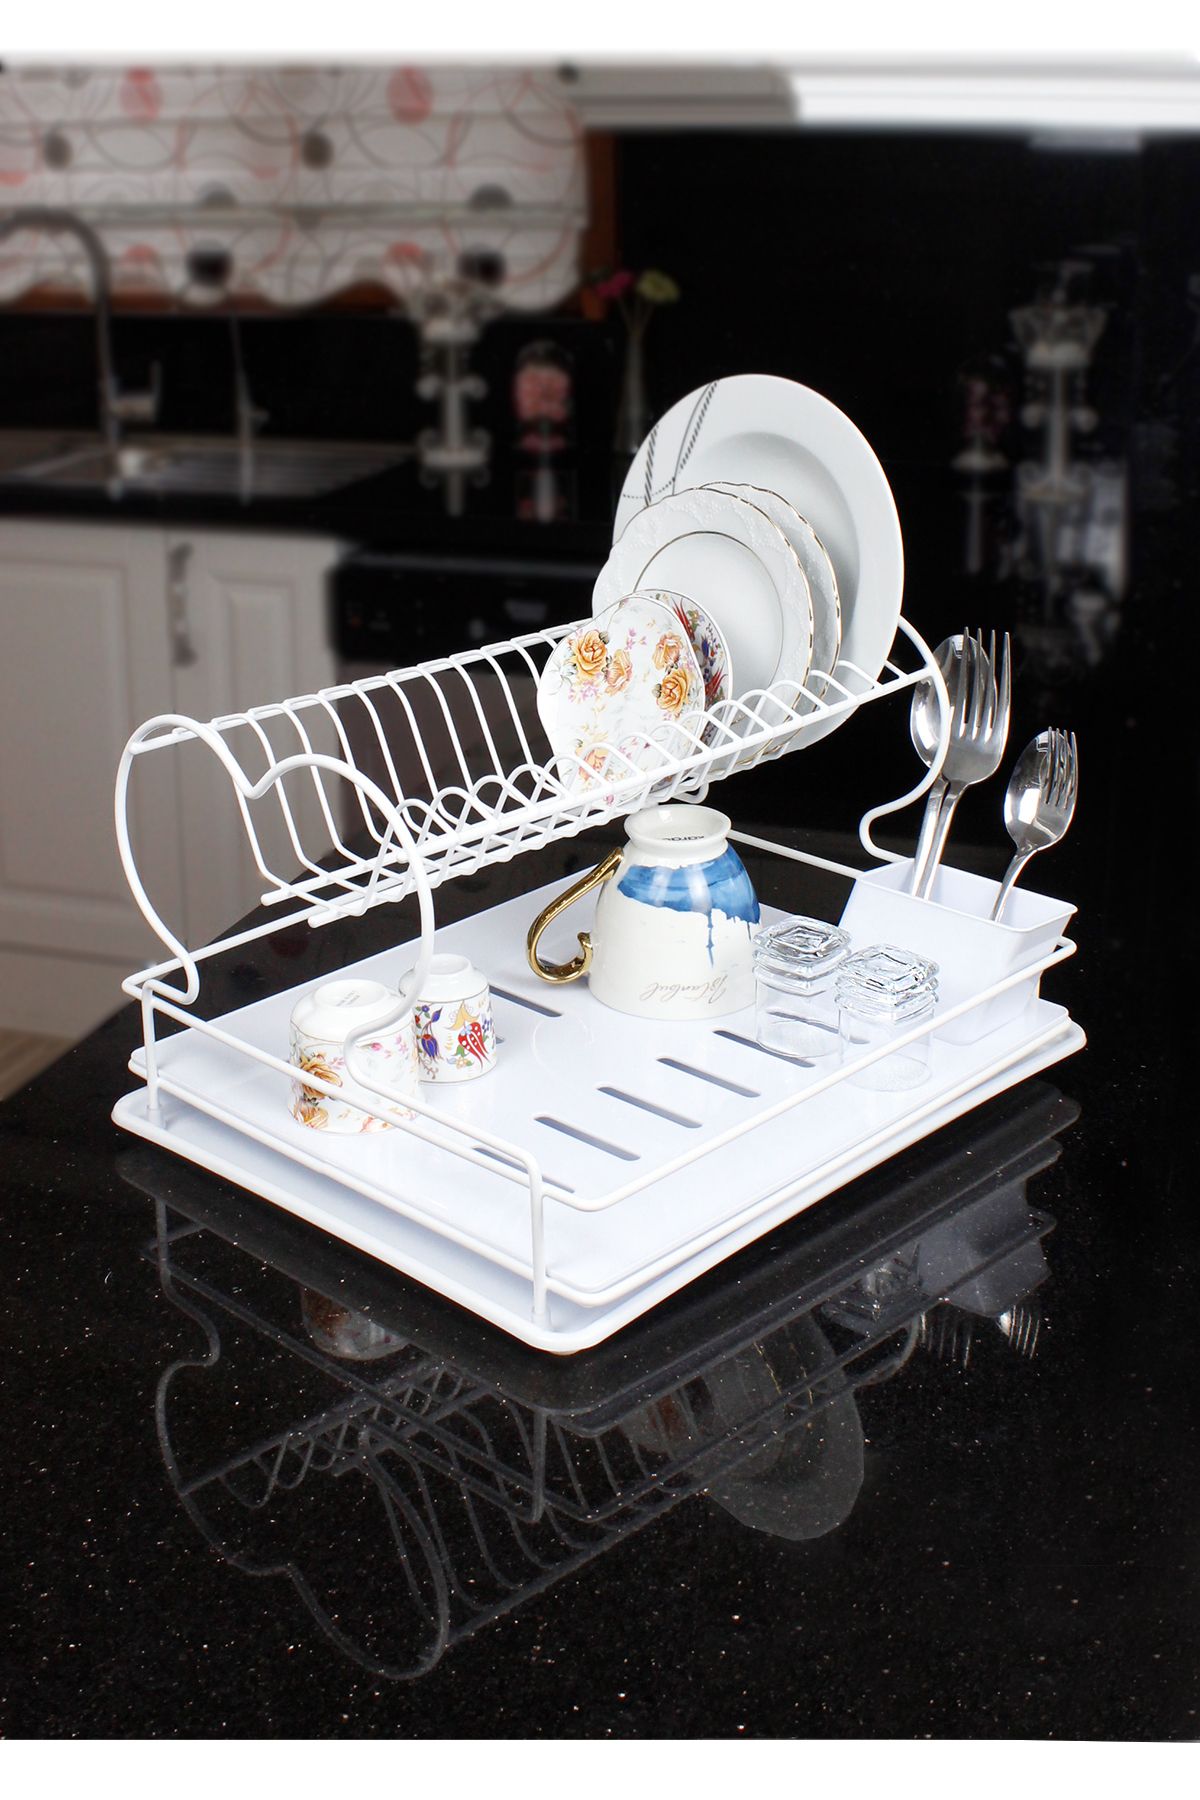 HIMYHOME Kristal Tepsili Modern Paslanmaz Bulaşıklık Katlı Beyaz Tabaklık Bulaşık Sepeti Mutfak Düzenleyici